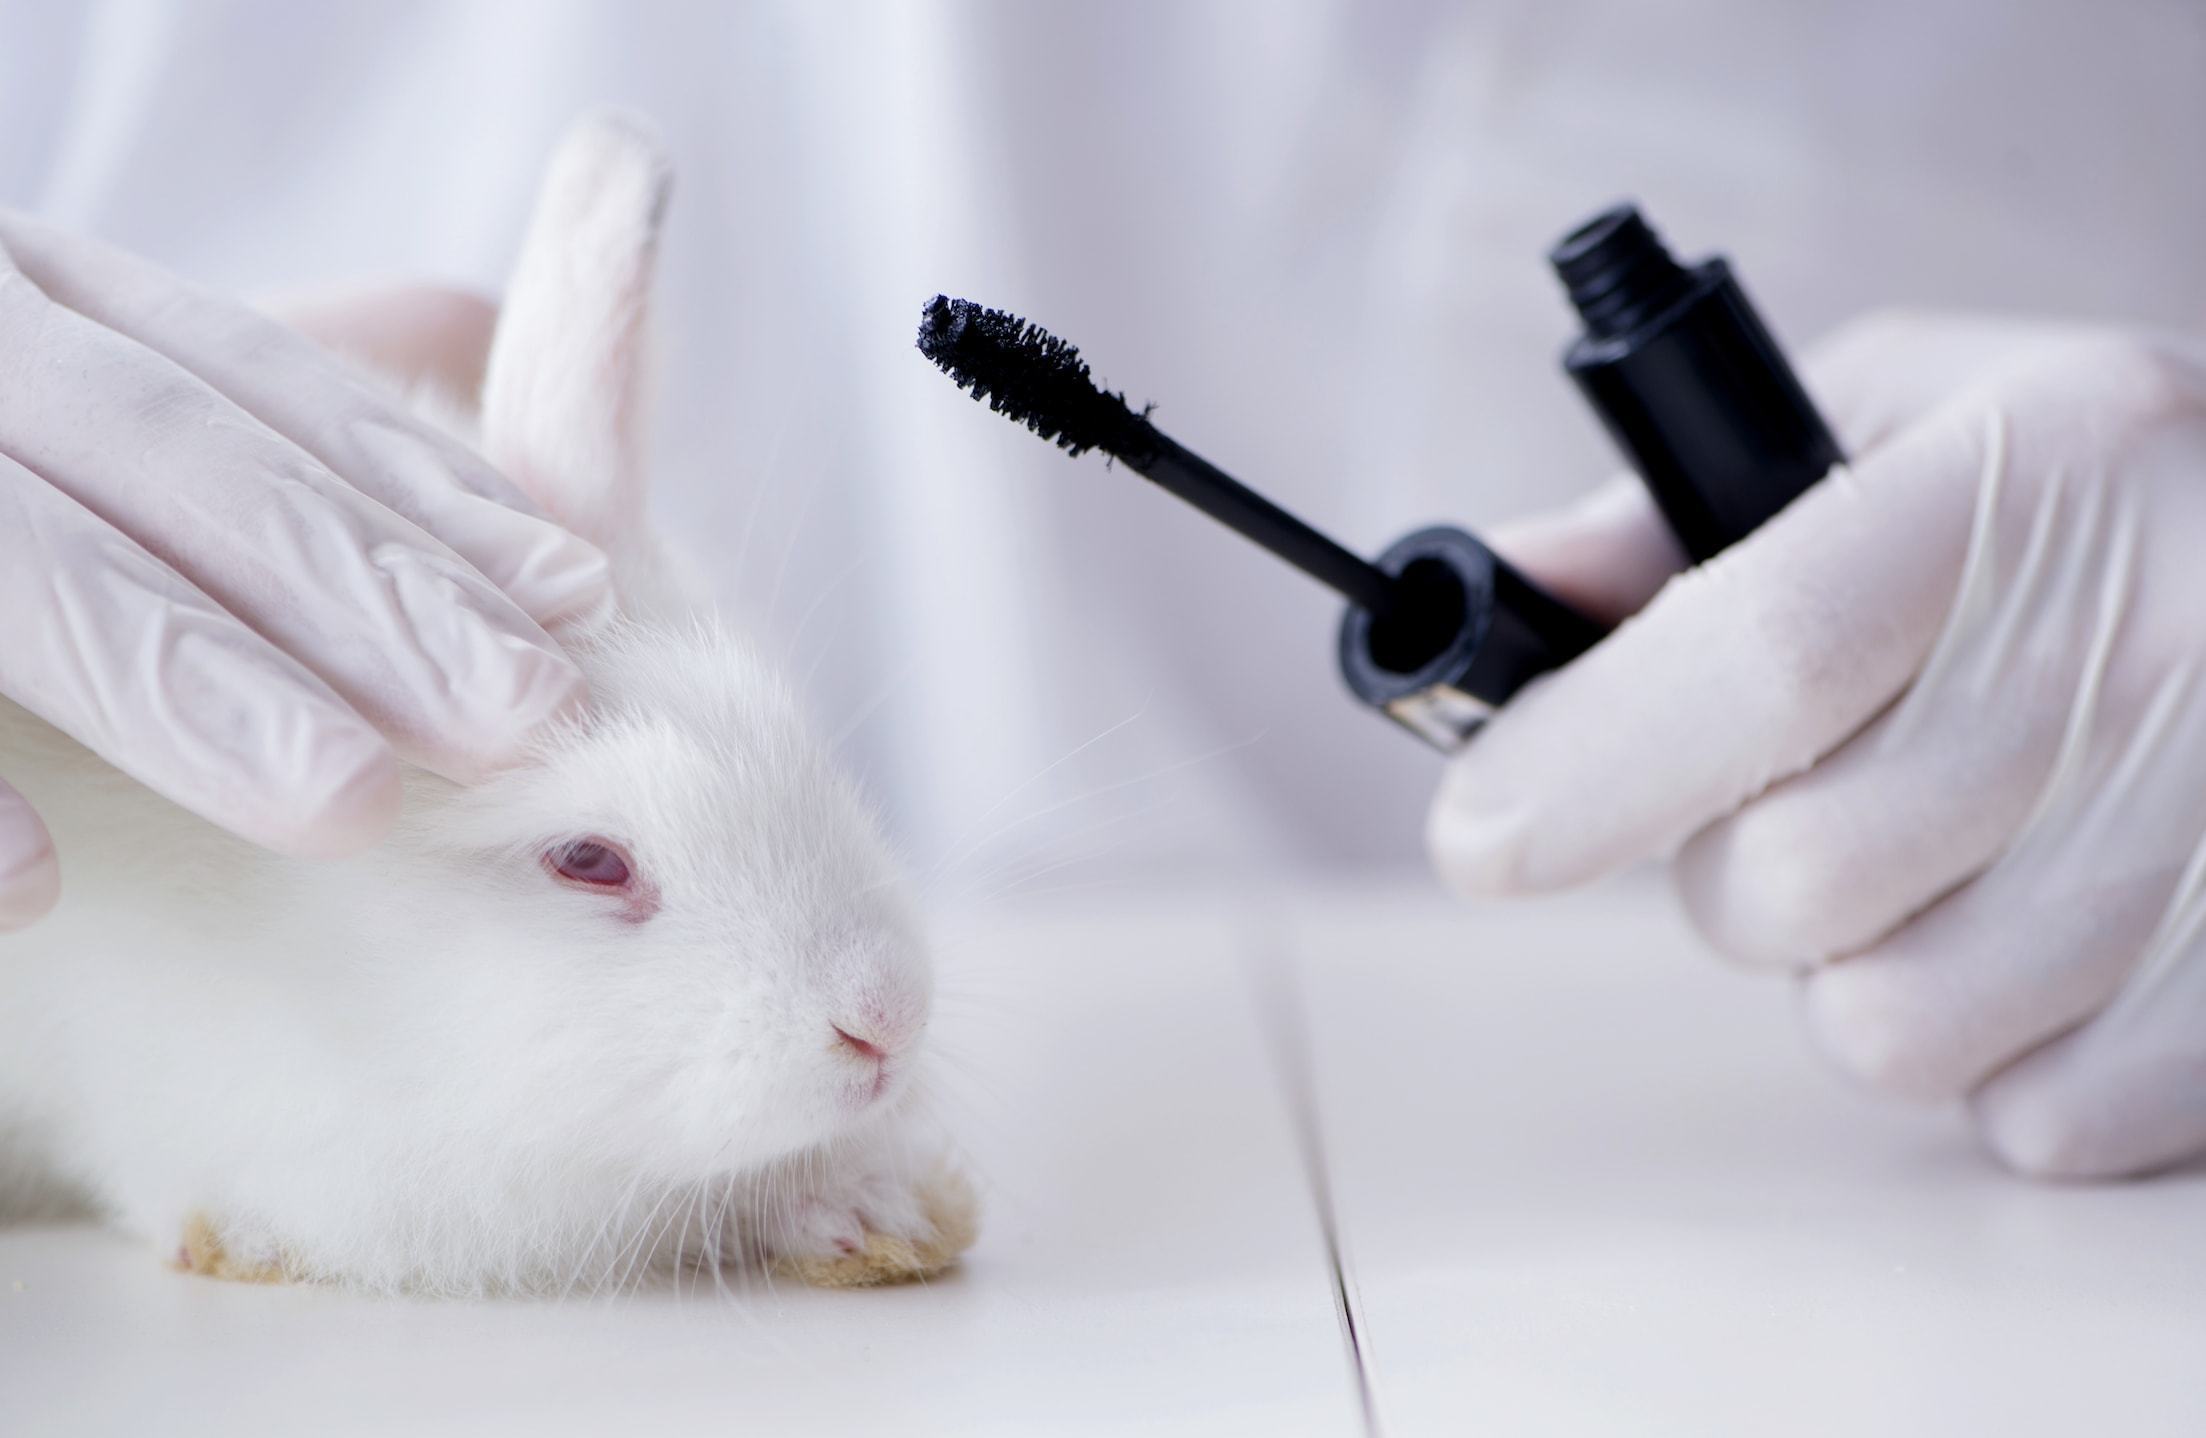 Aprueban alternativas a las pruebas con animales en China